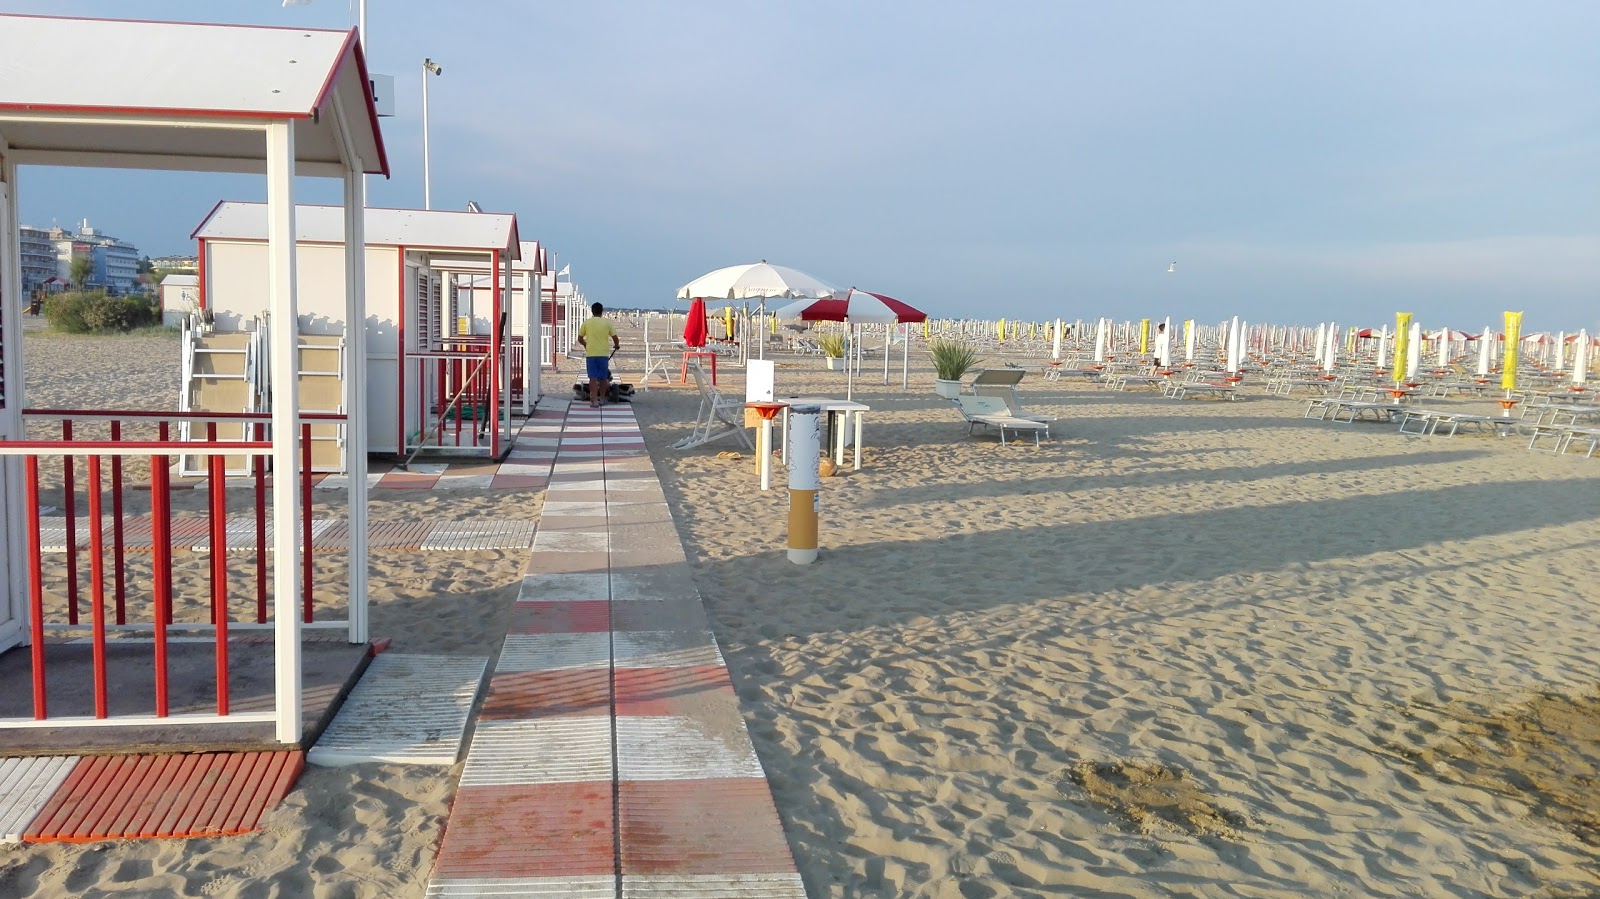 Foto de Spiaggia di Levante - lugar popular entre los conocedores del relax